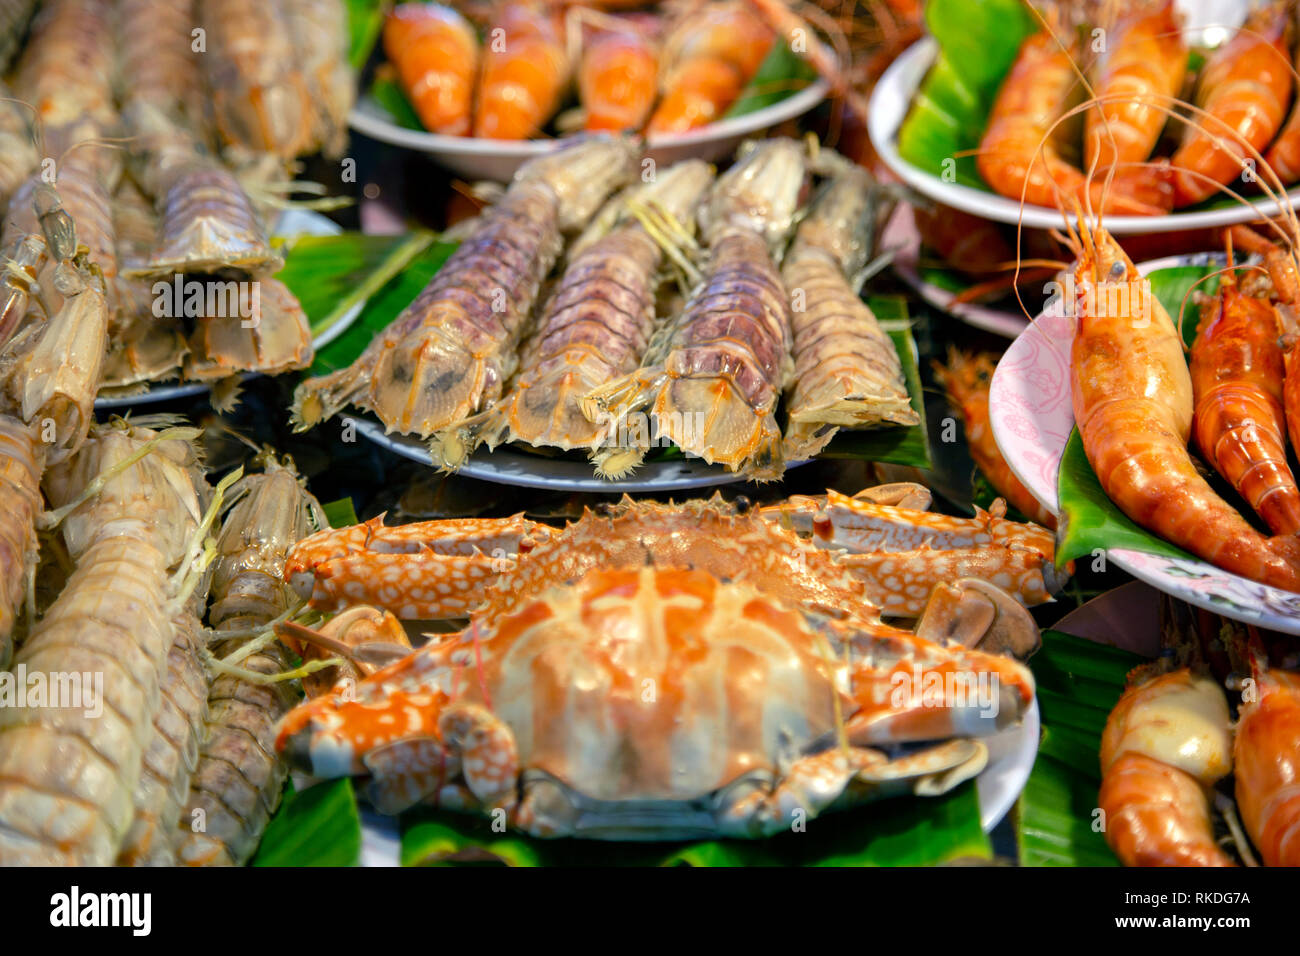 Un arrangement de crabe, crevettes cuites, crevettes, crustacés fruits de mer crustacés crevettes mantis à un marché aux poissons food à Phuket, Thaïlande. Banque D'Images